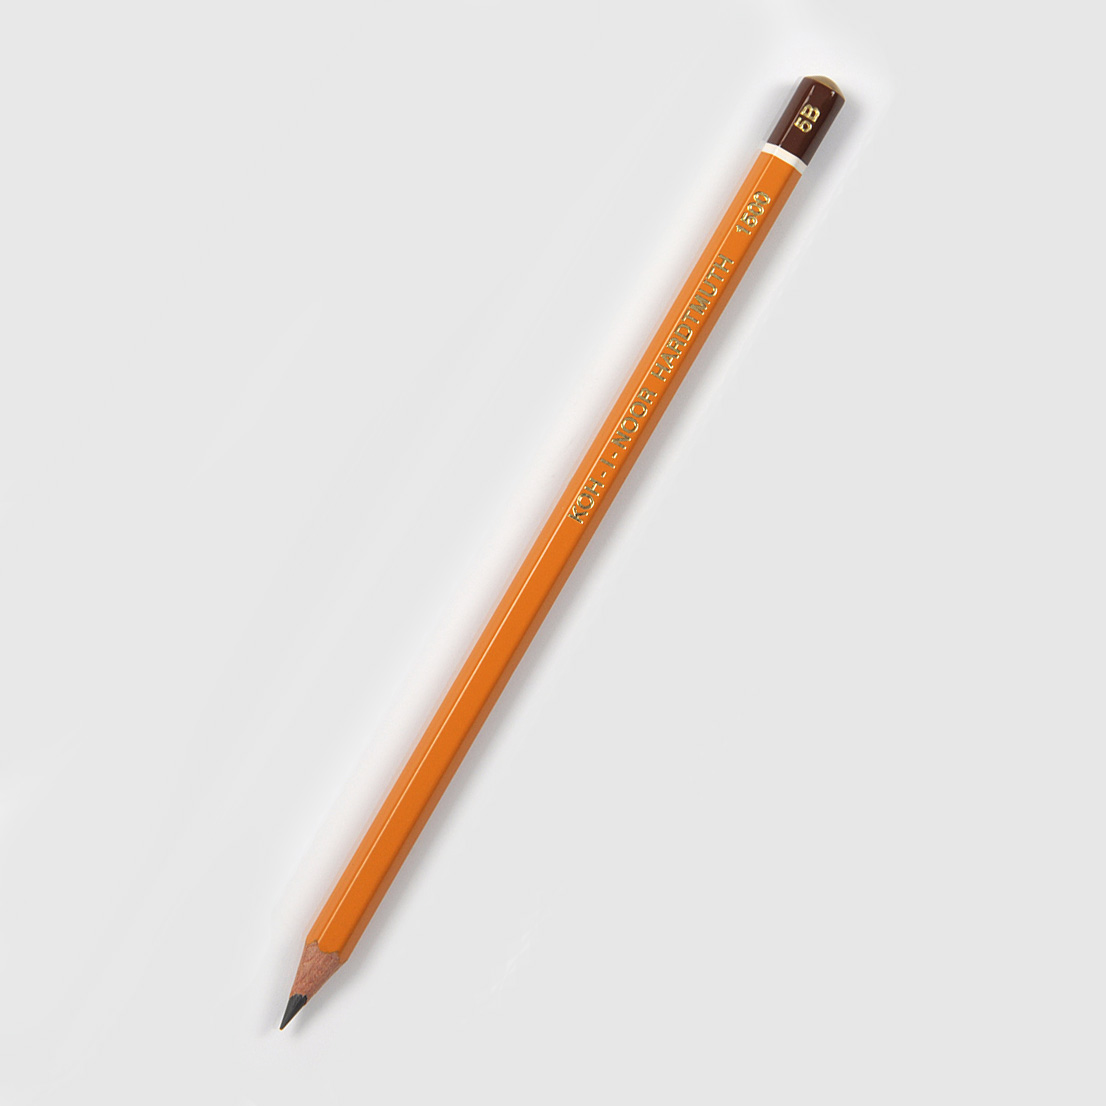 Grafitová tužka Koh-i-noor 1500, 5B, šestihranná